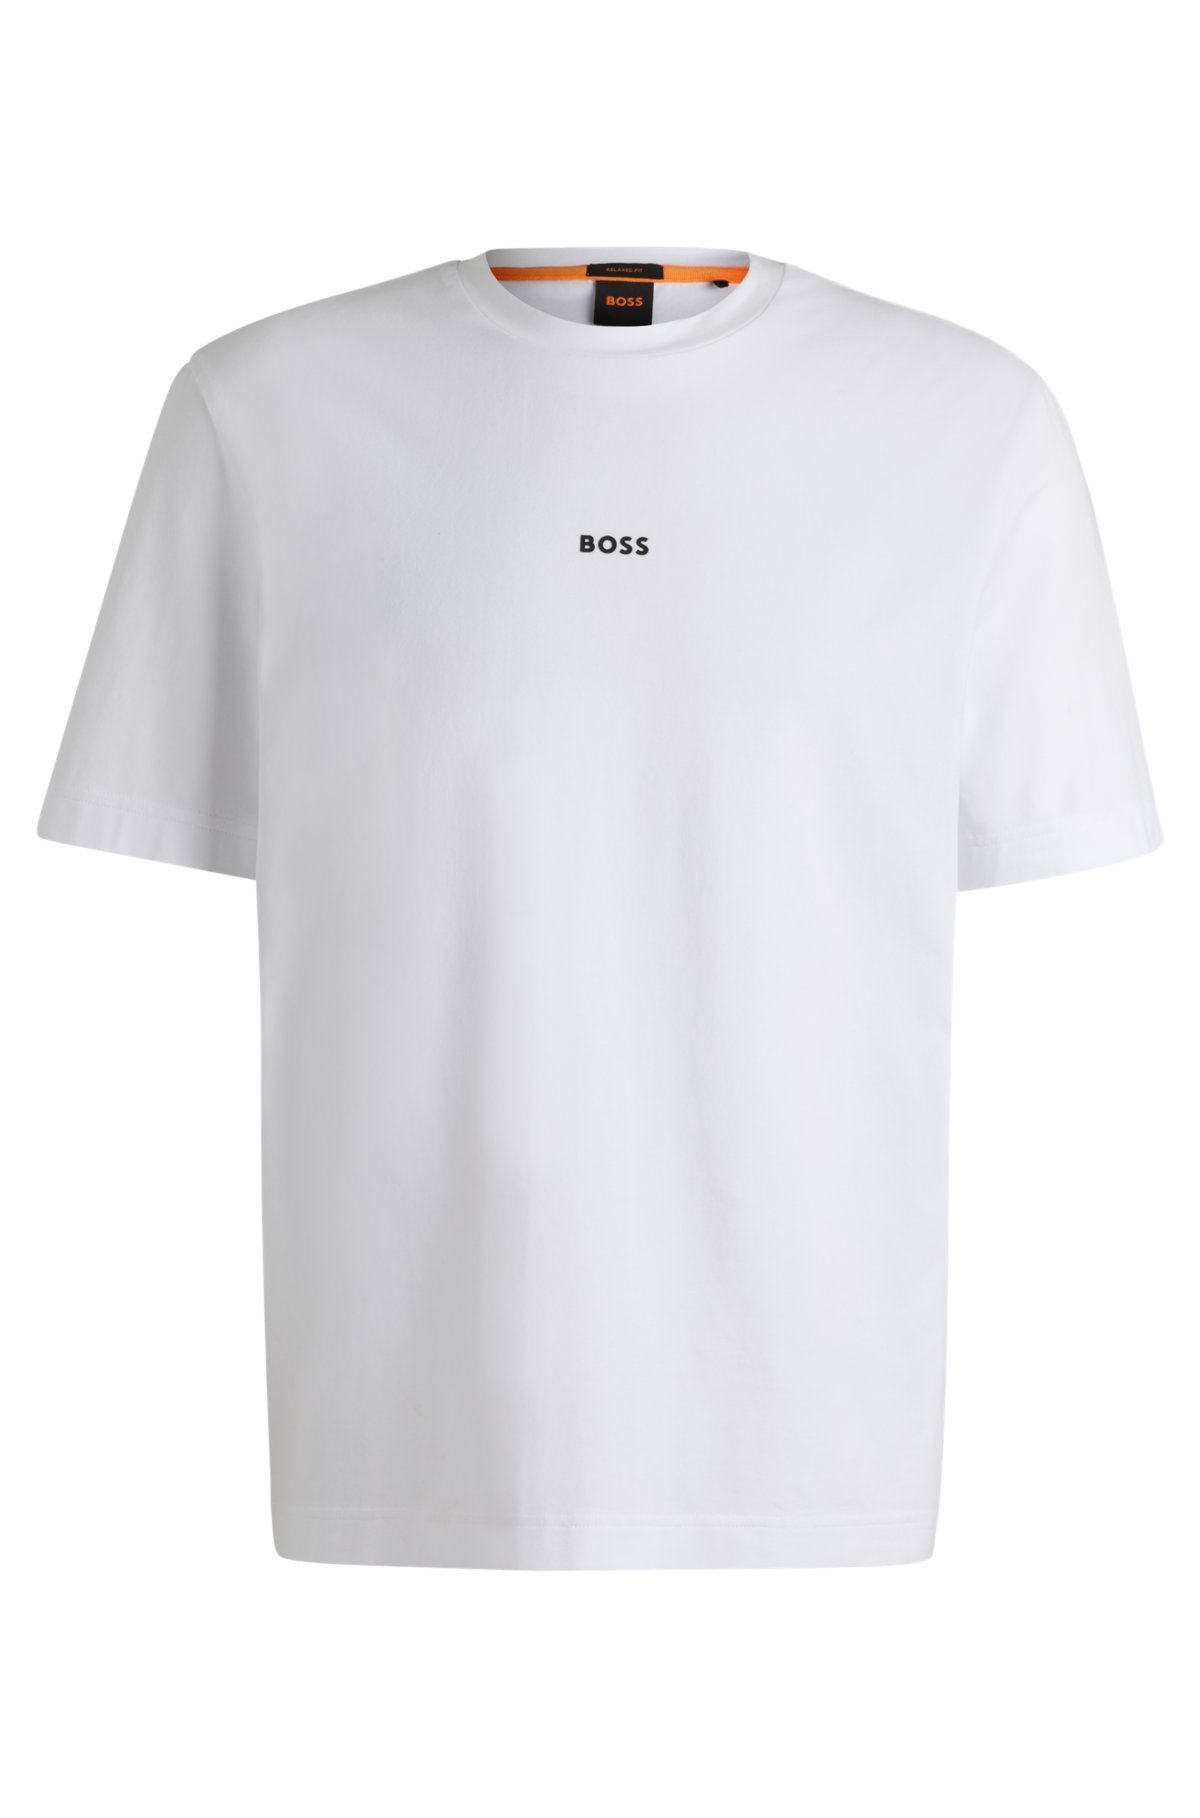 BOSS - リラックスフィット Tシャツ ストレッチコットン ロゴプリント